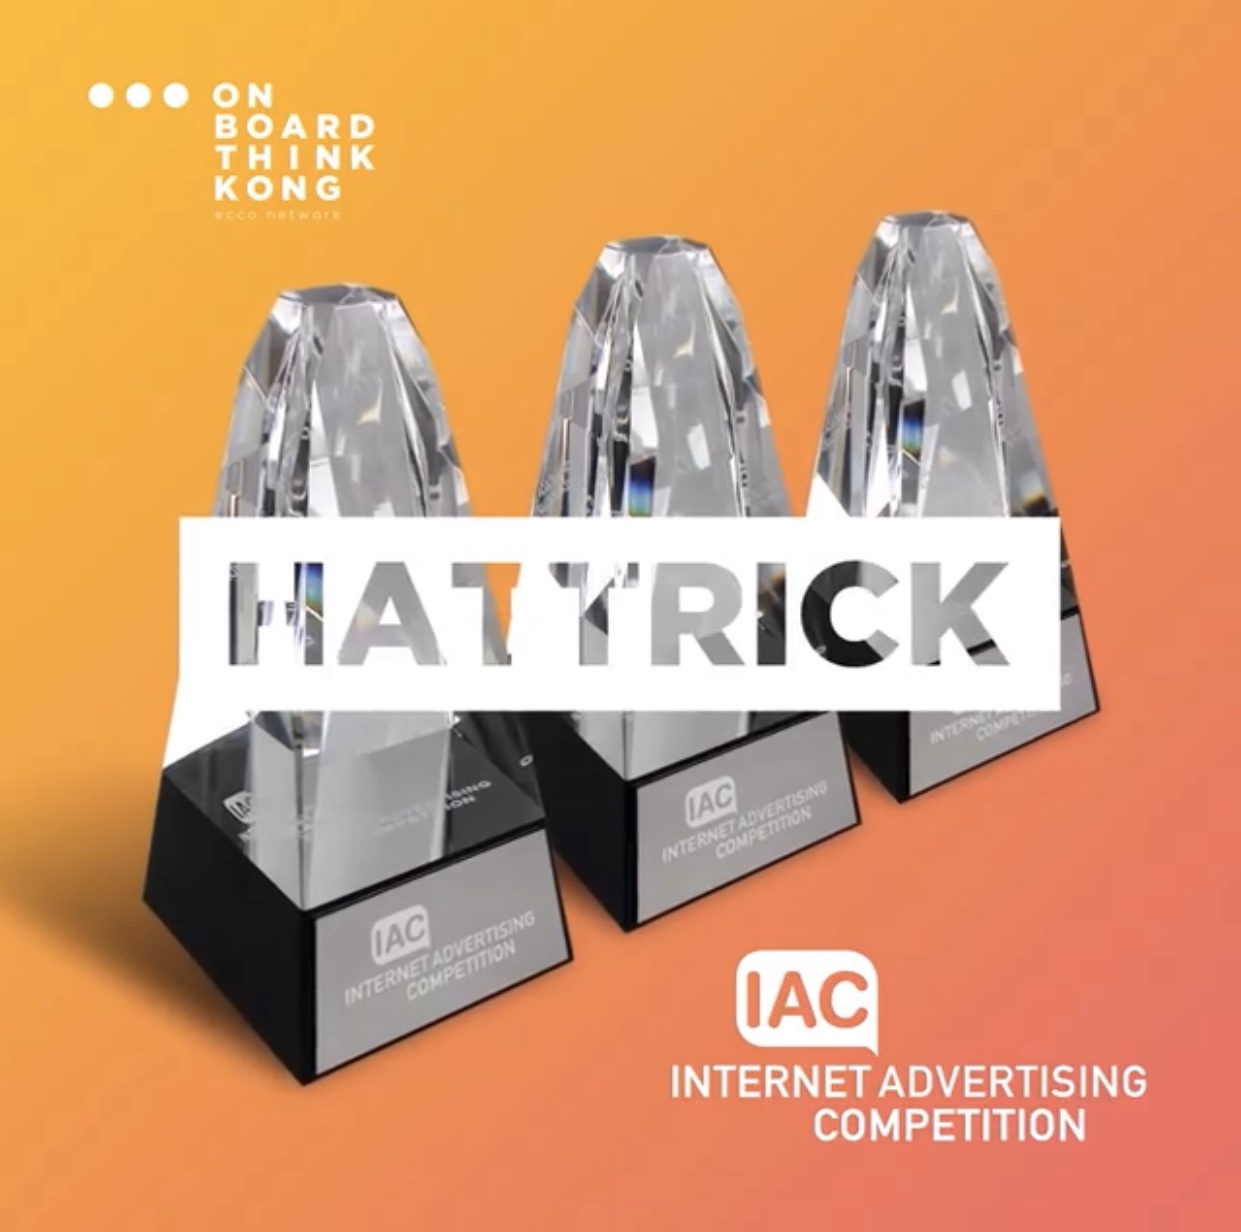 3 nagrody IAC Awards 2020 dla kampanii zrealizowanych przez On Board Think Kong